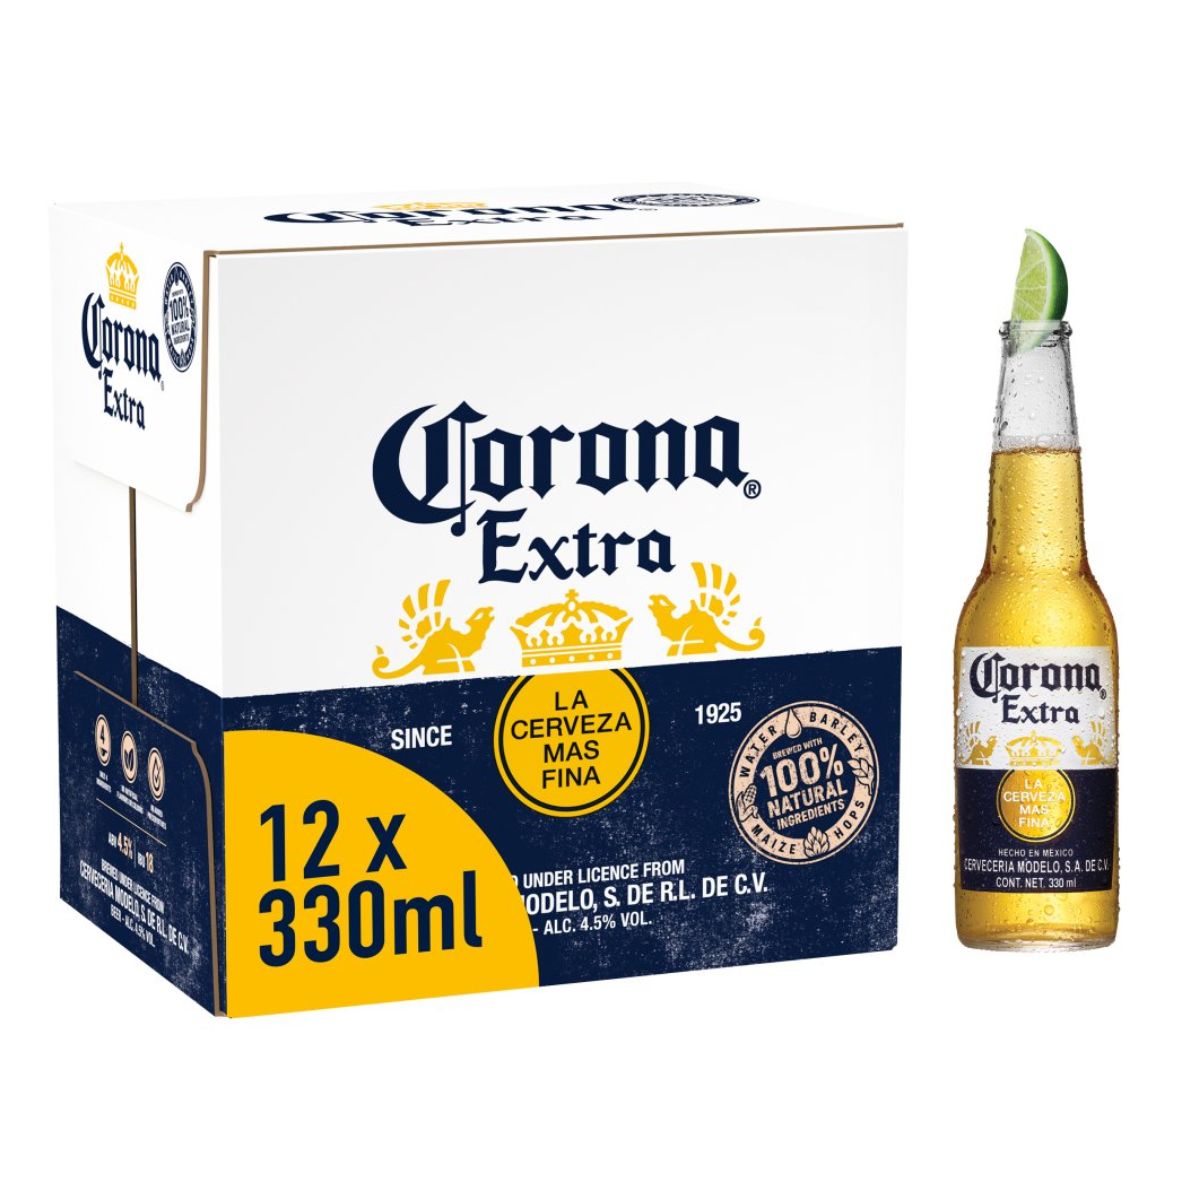 Corona Extra (4.5% ABV) - 12 x 330ml extra (4.5% ABV) - 12 x 330ml extra (4.5% ABV) - 12 x 330ml extra (4.5% ABV) - corona